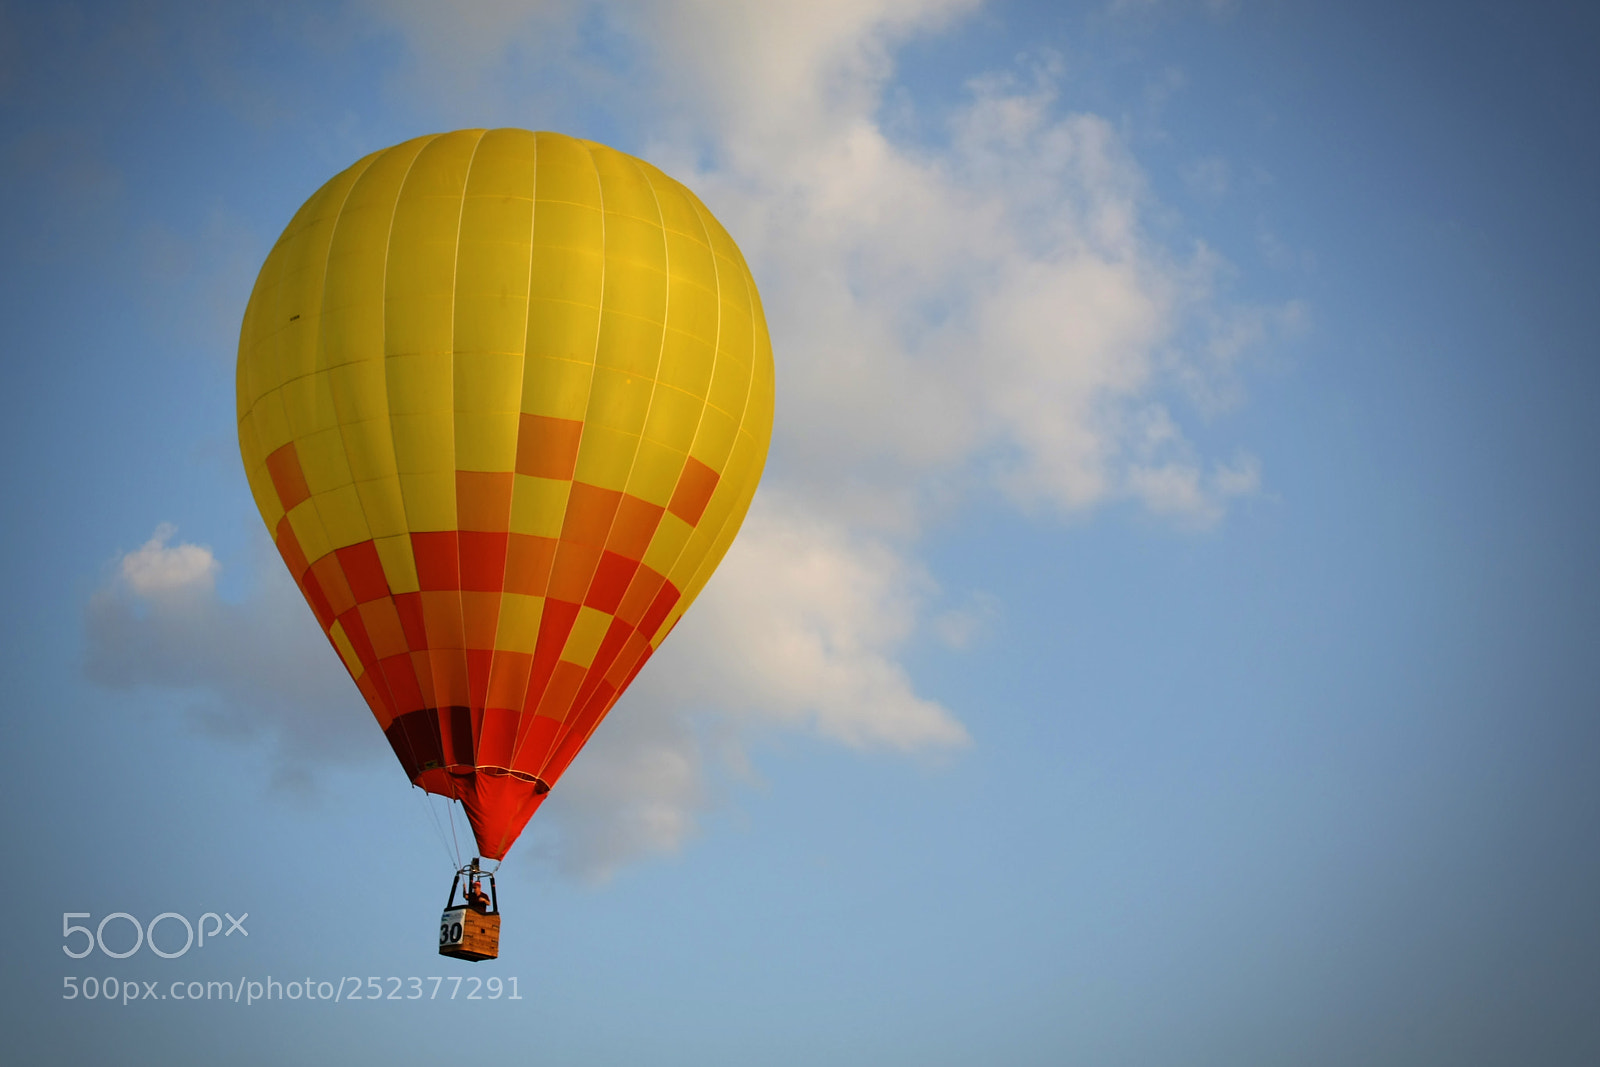 Canon EOS 450D (EOS Rebel XSi / EOS Kiss X2) sample photo. Hot air balloon photography